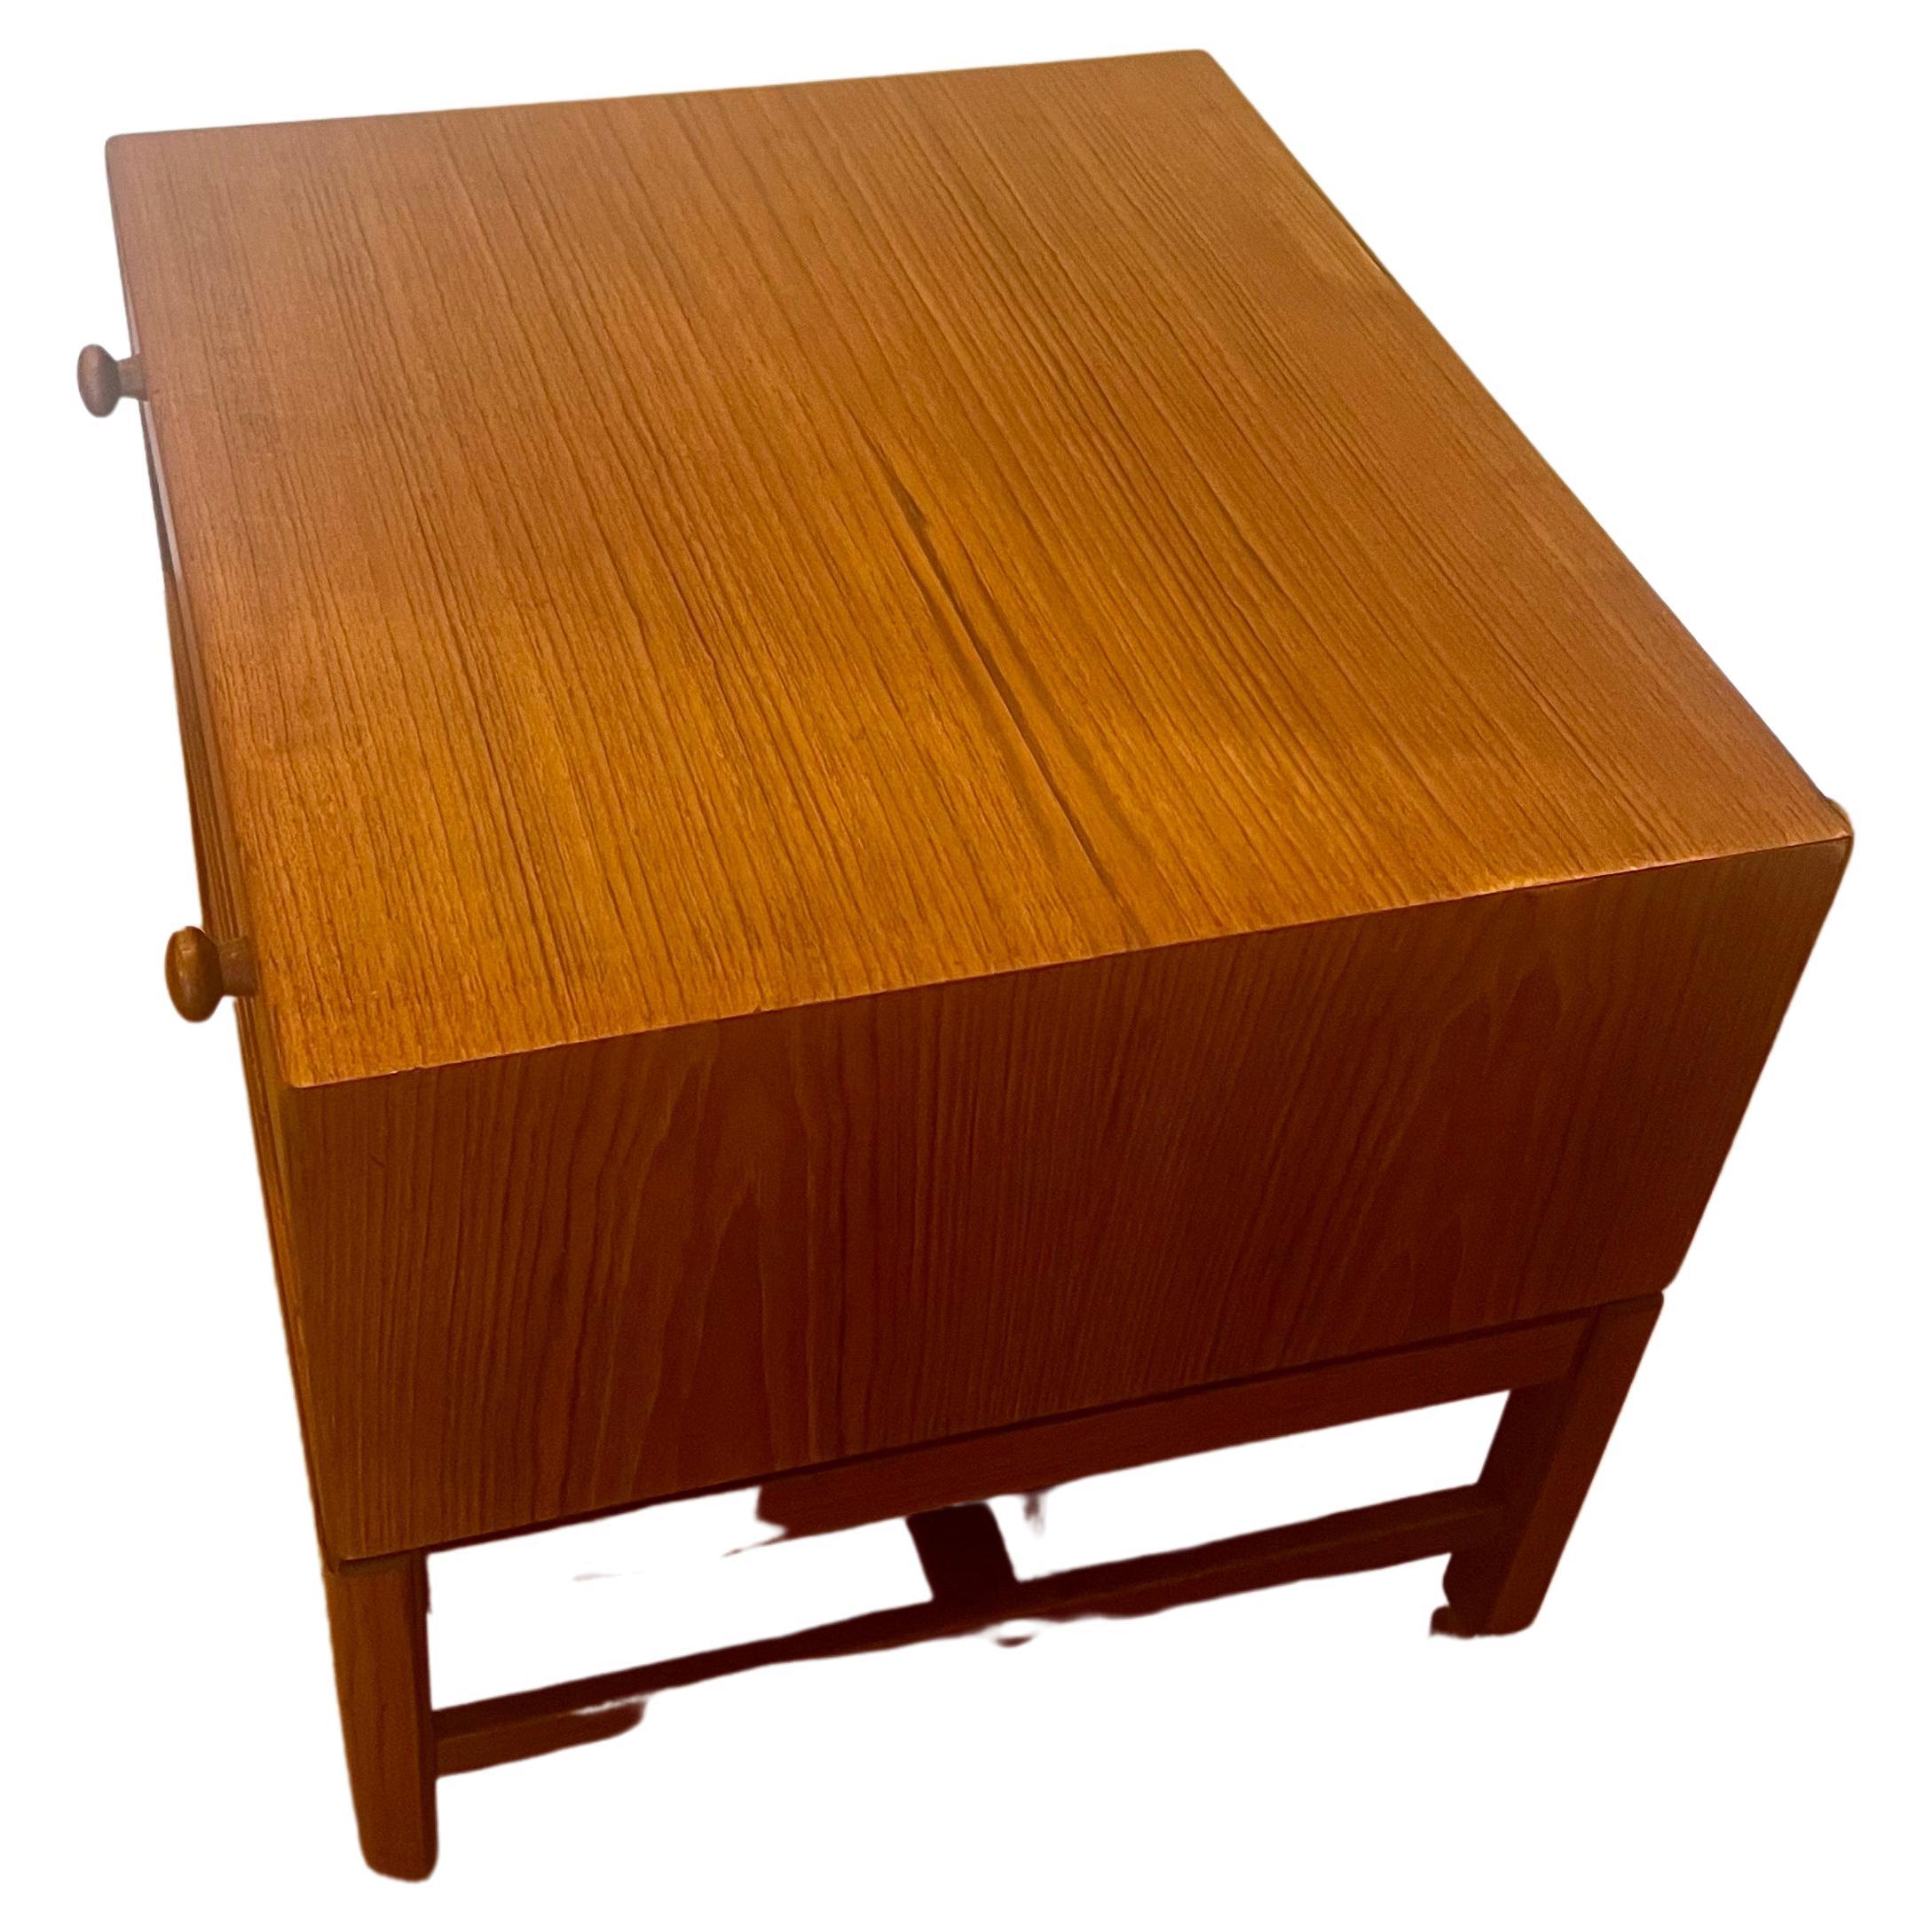 Elegant meuble bas, table de chevet avec tiroir, circa 1950, fabriqué en Suède, fraîchement restauré. Rare et unique, la base se détache pour faciliter l'expédition.